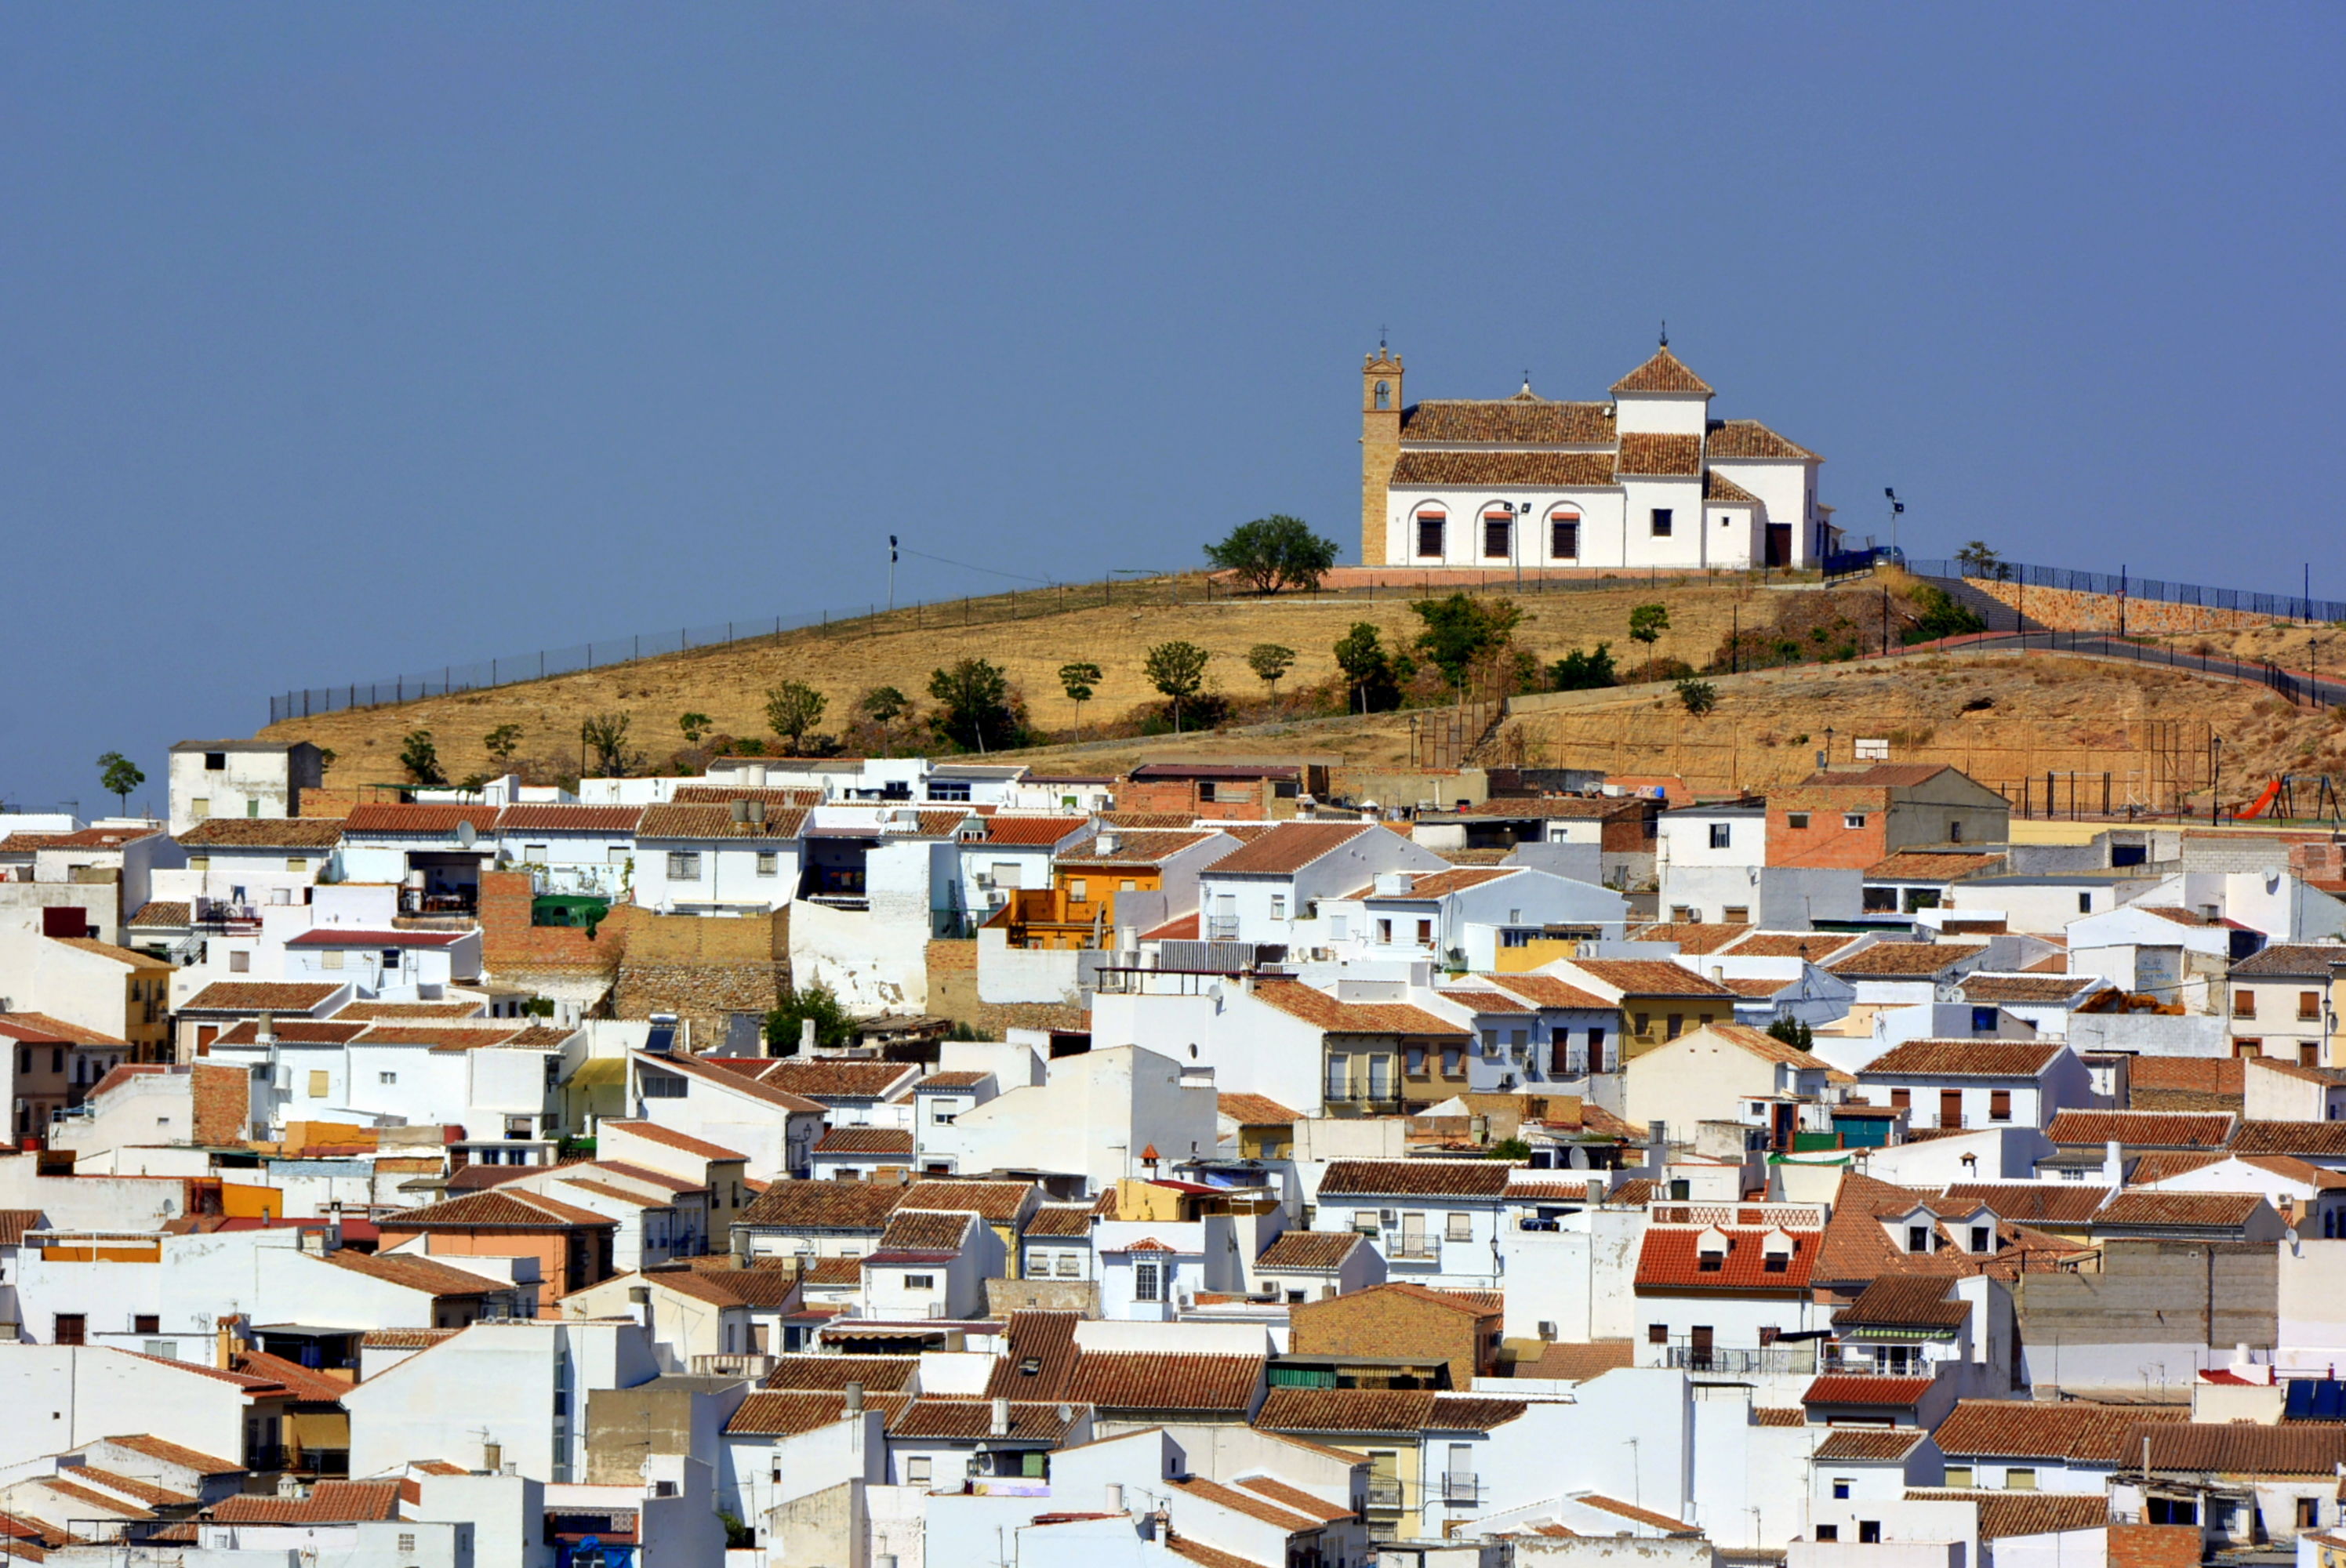 Le jolie village d'Antequera